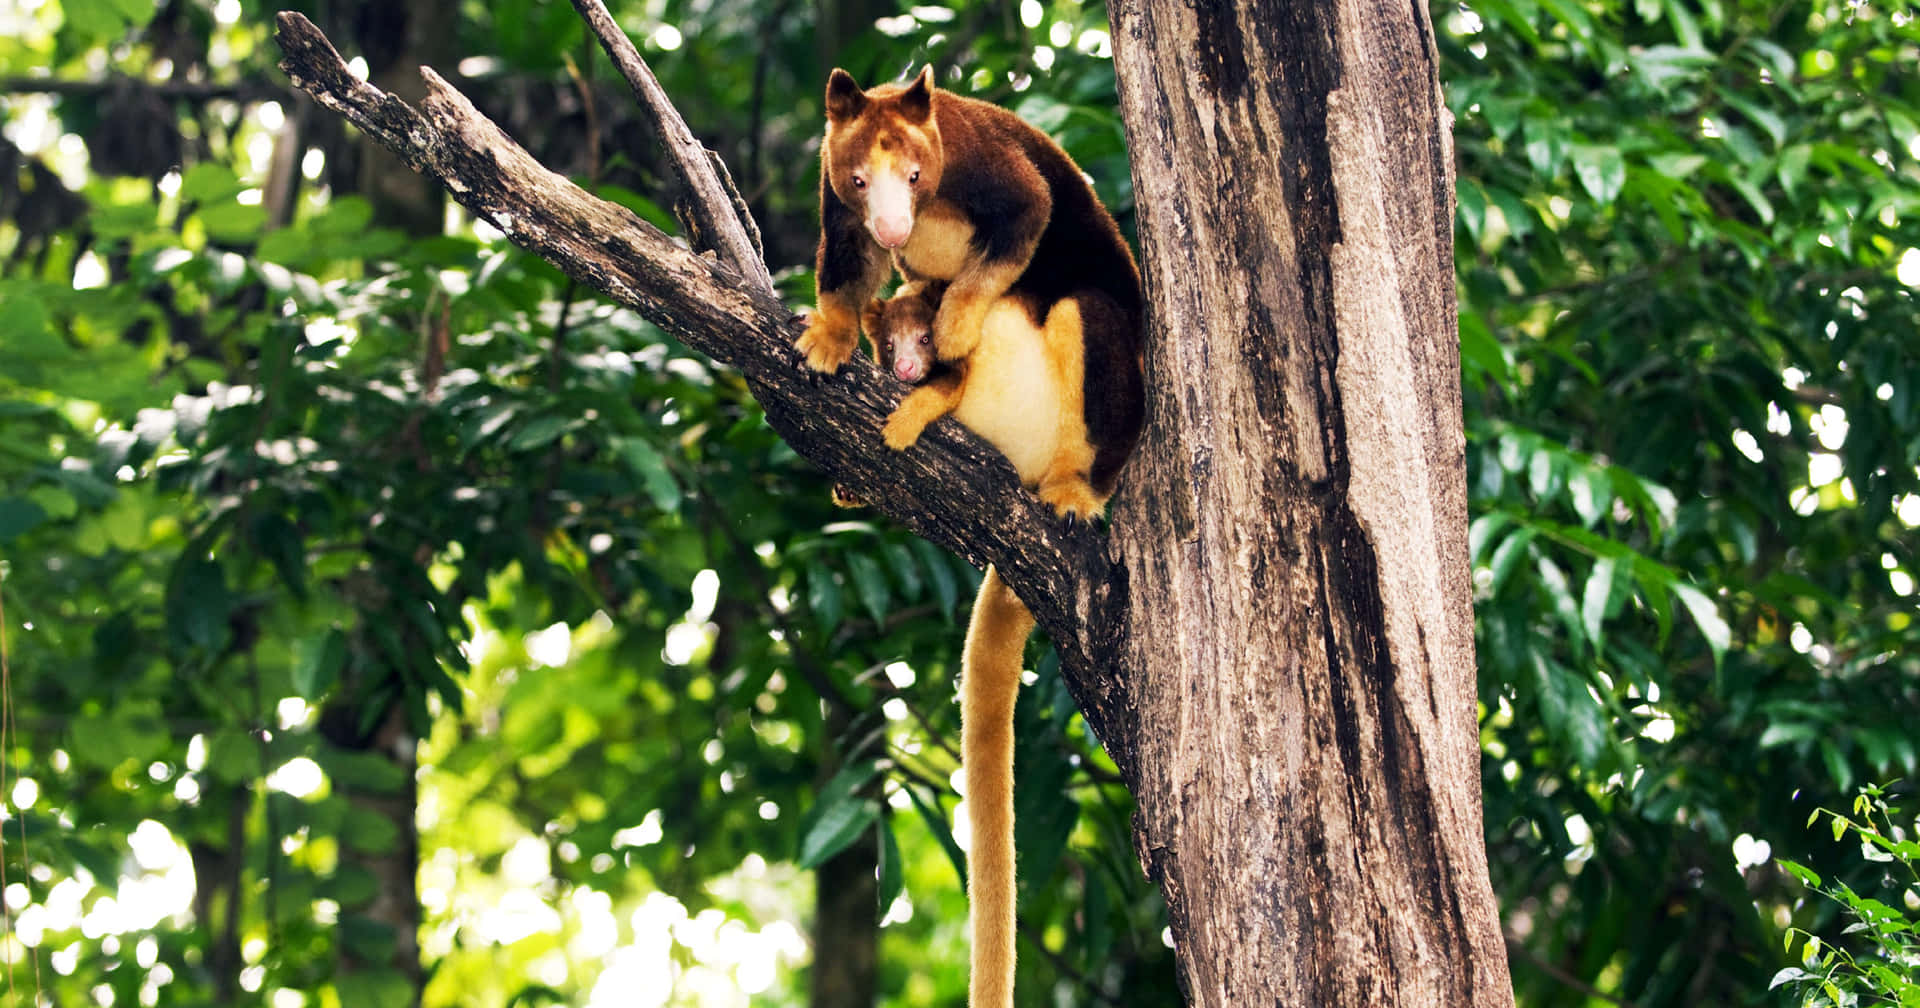 Tree Kangaroo Perchedon Branch Wallpaper